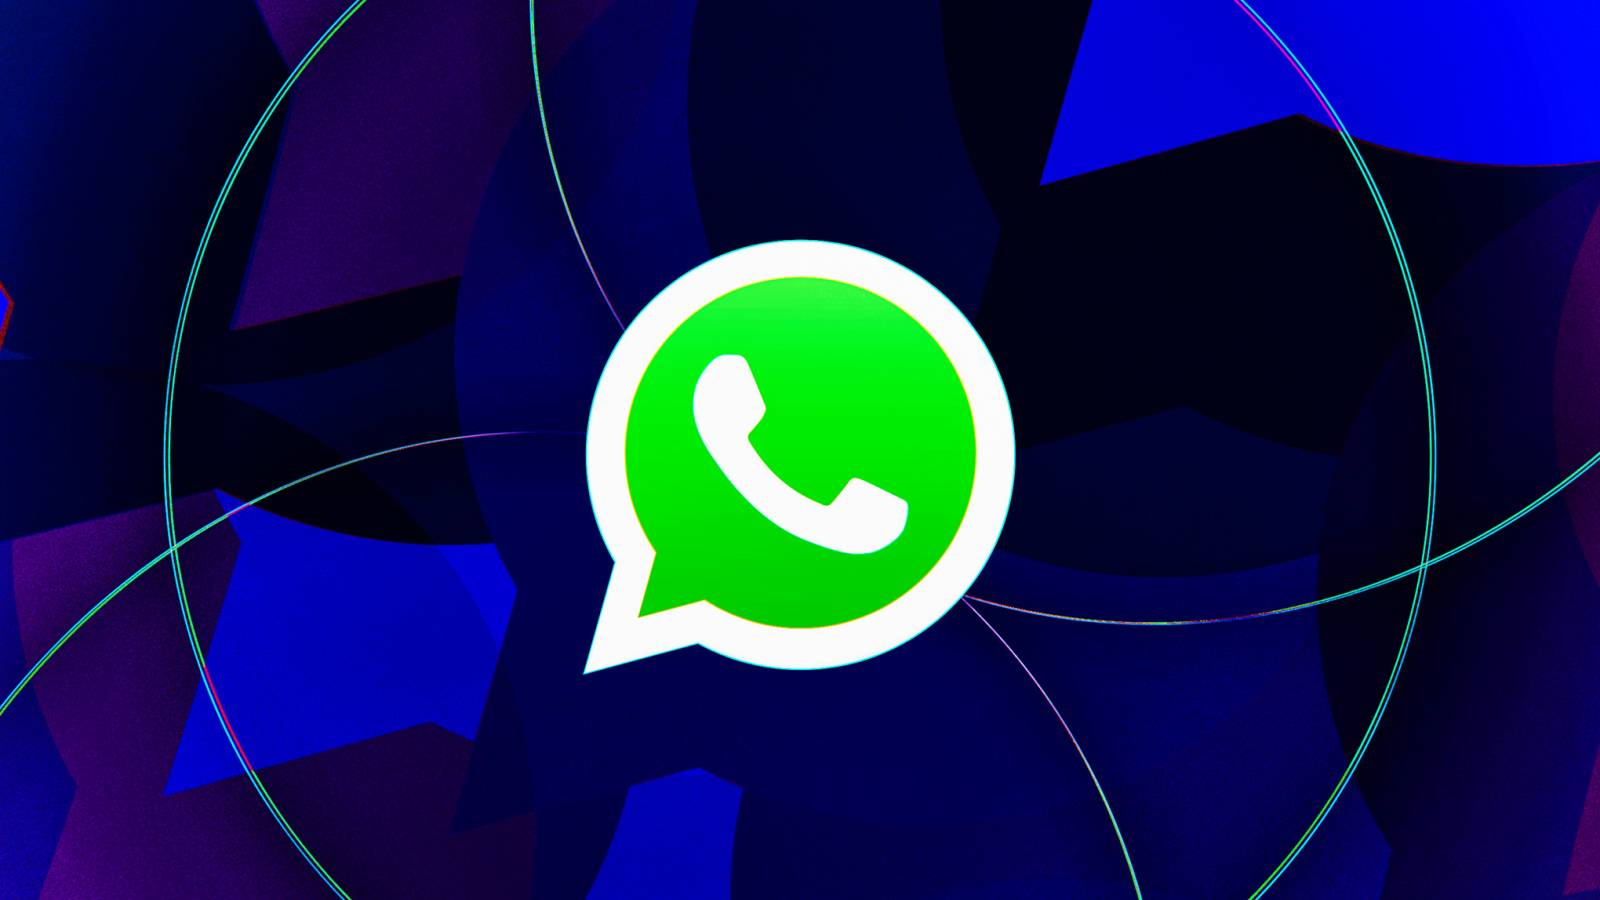 WhatsApp IMPORTANTE Apuesta Millones de Personas iPhone Android